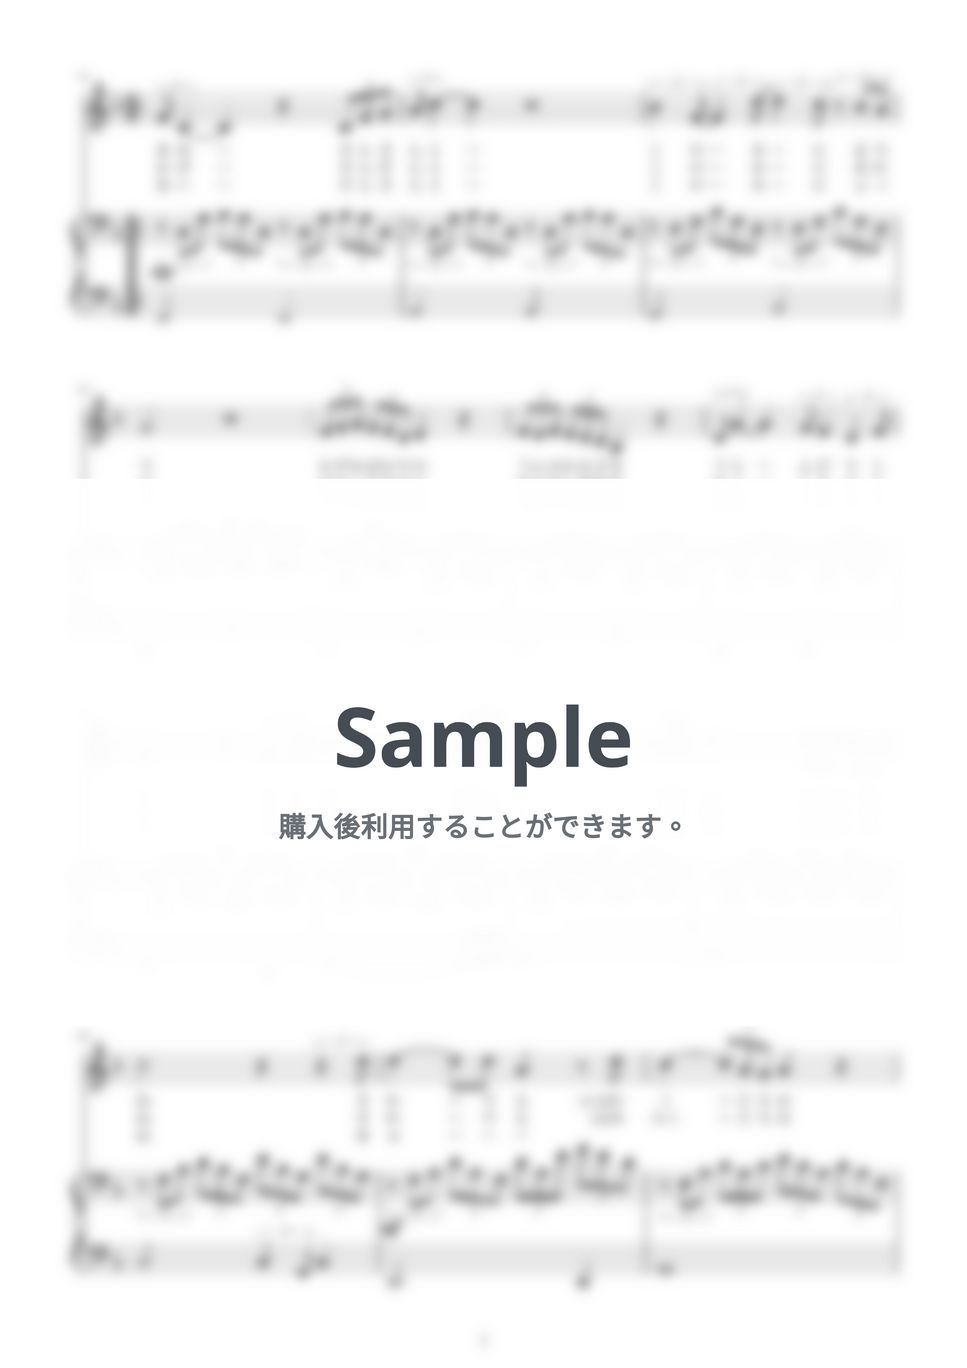 美空ひばり - 愛燦燦：メロディー&ピアノ伴奏(へ長調:F) by pyu_fumen